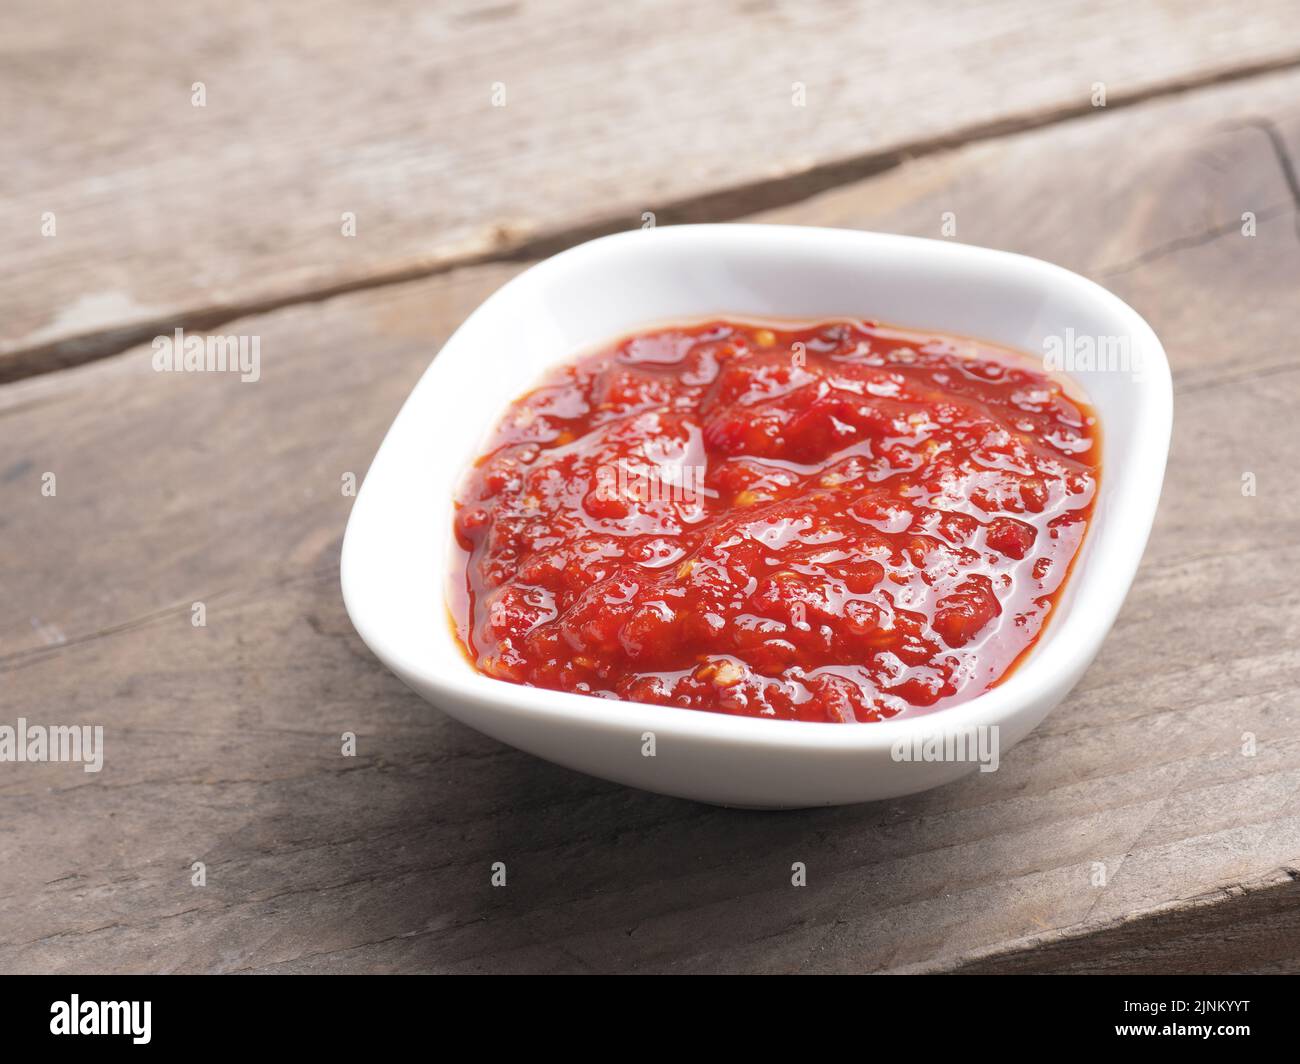 sauce, scharfe sauce, sauces Stock Photo